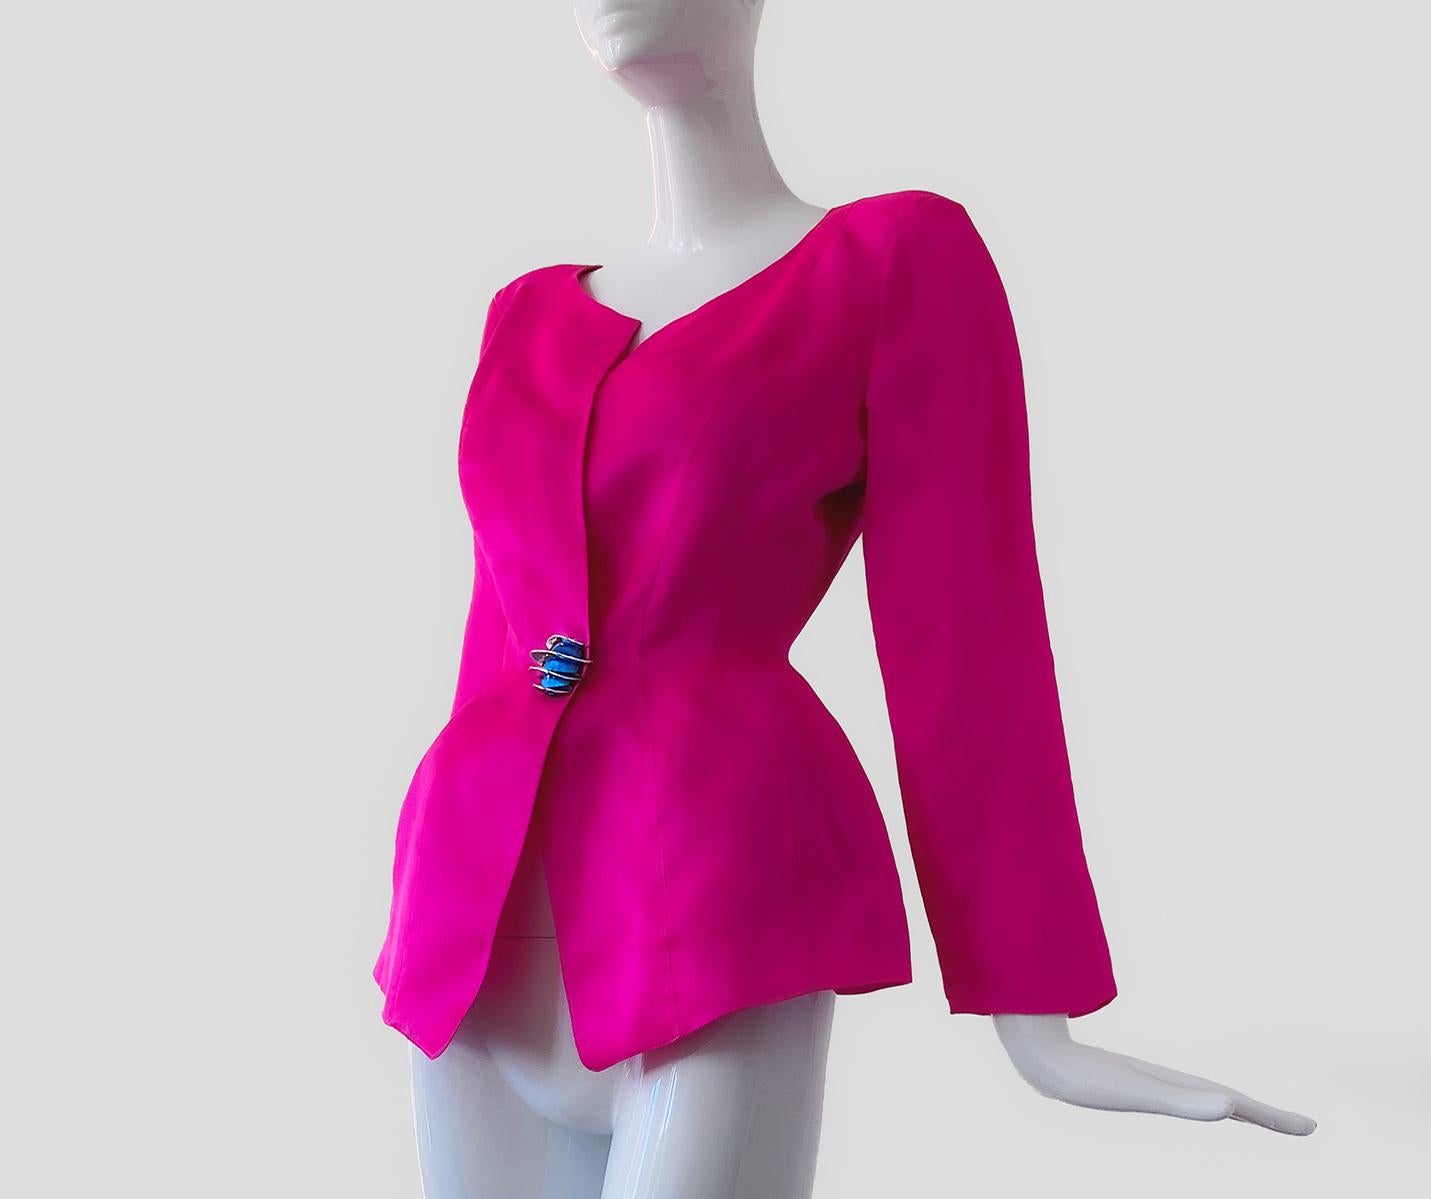 Rouge Fabuleuse et rare veste Thierry Mugler rose chaud en pure soie argentée bouton Eleme en vente